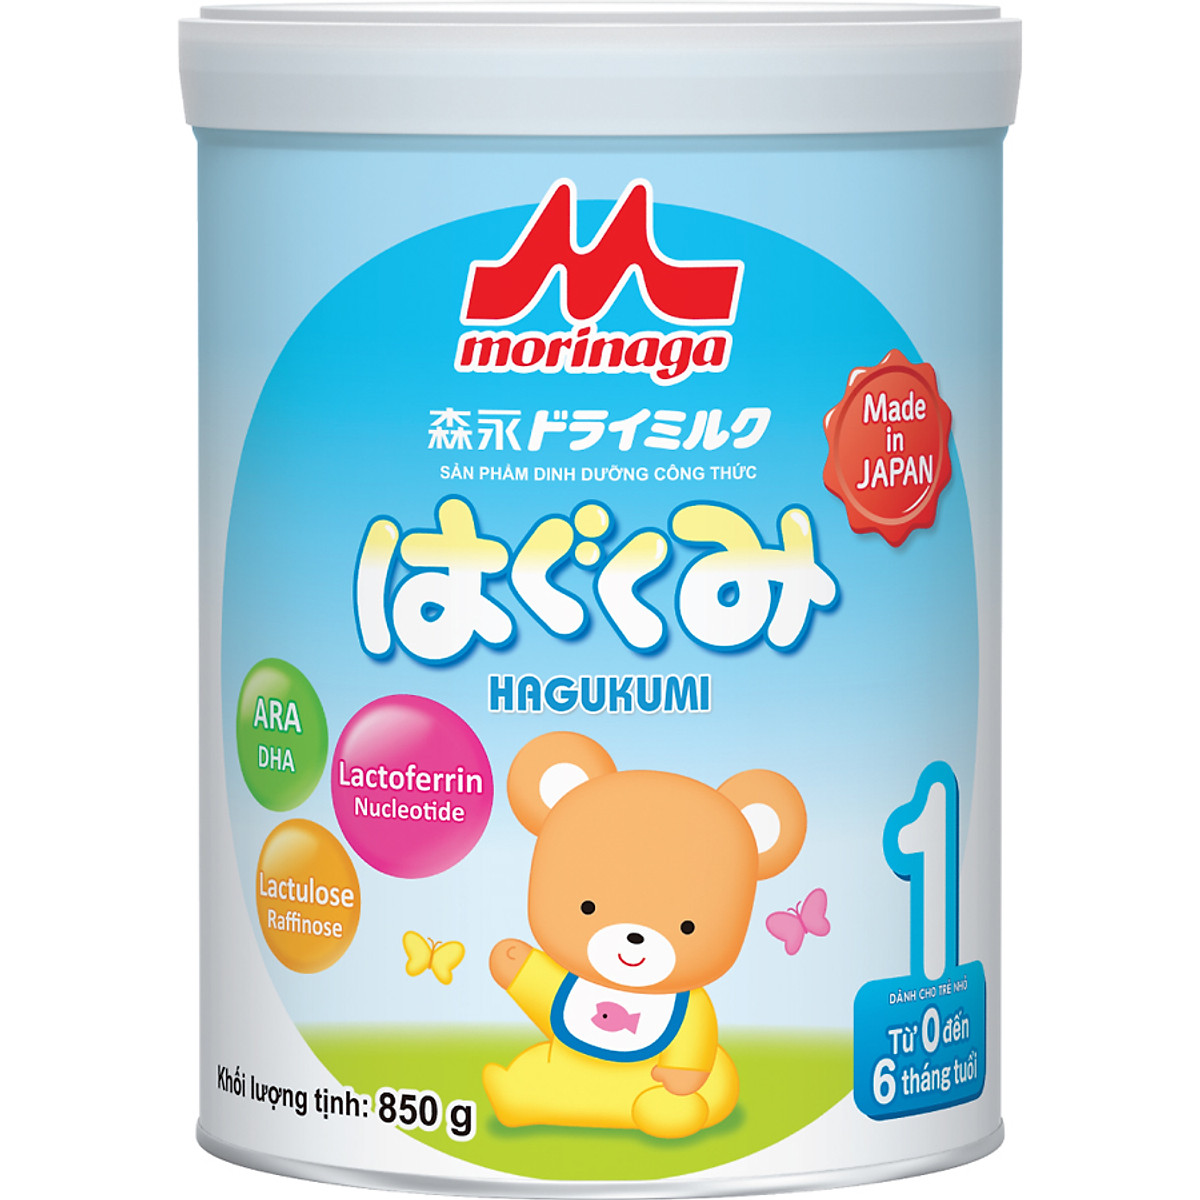 Combo Sữa Morinaga Số 1 Hagukumi (850g) nguyên đai và đồ chơi Toys House